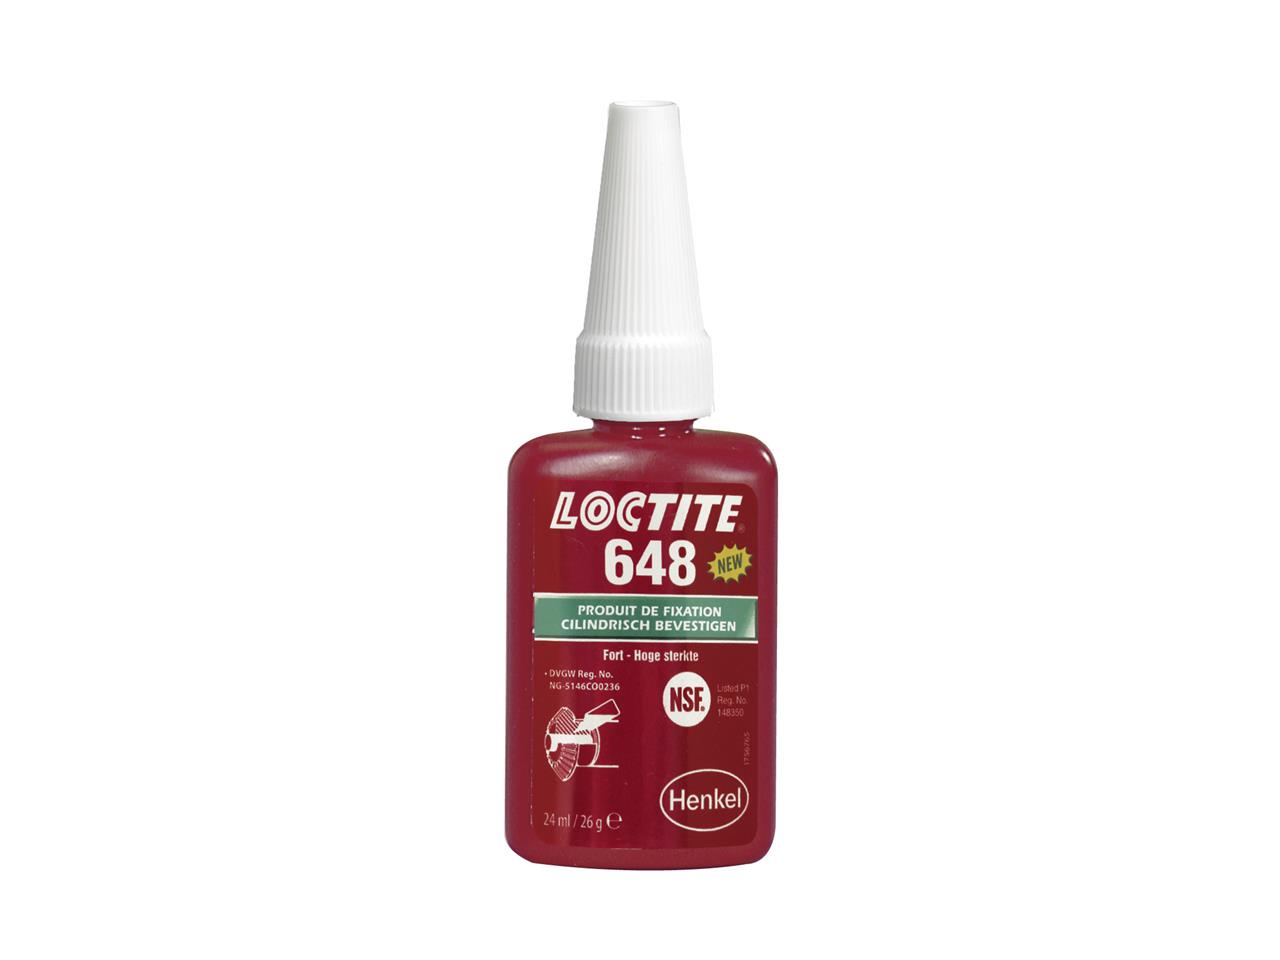 Loctite 648 produit de fixation